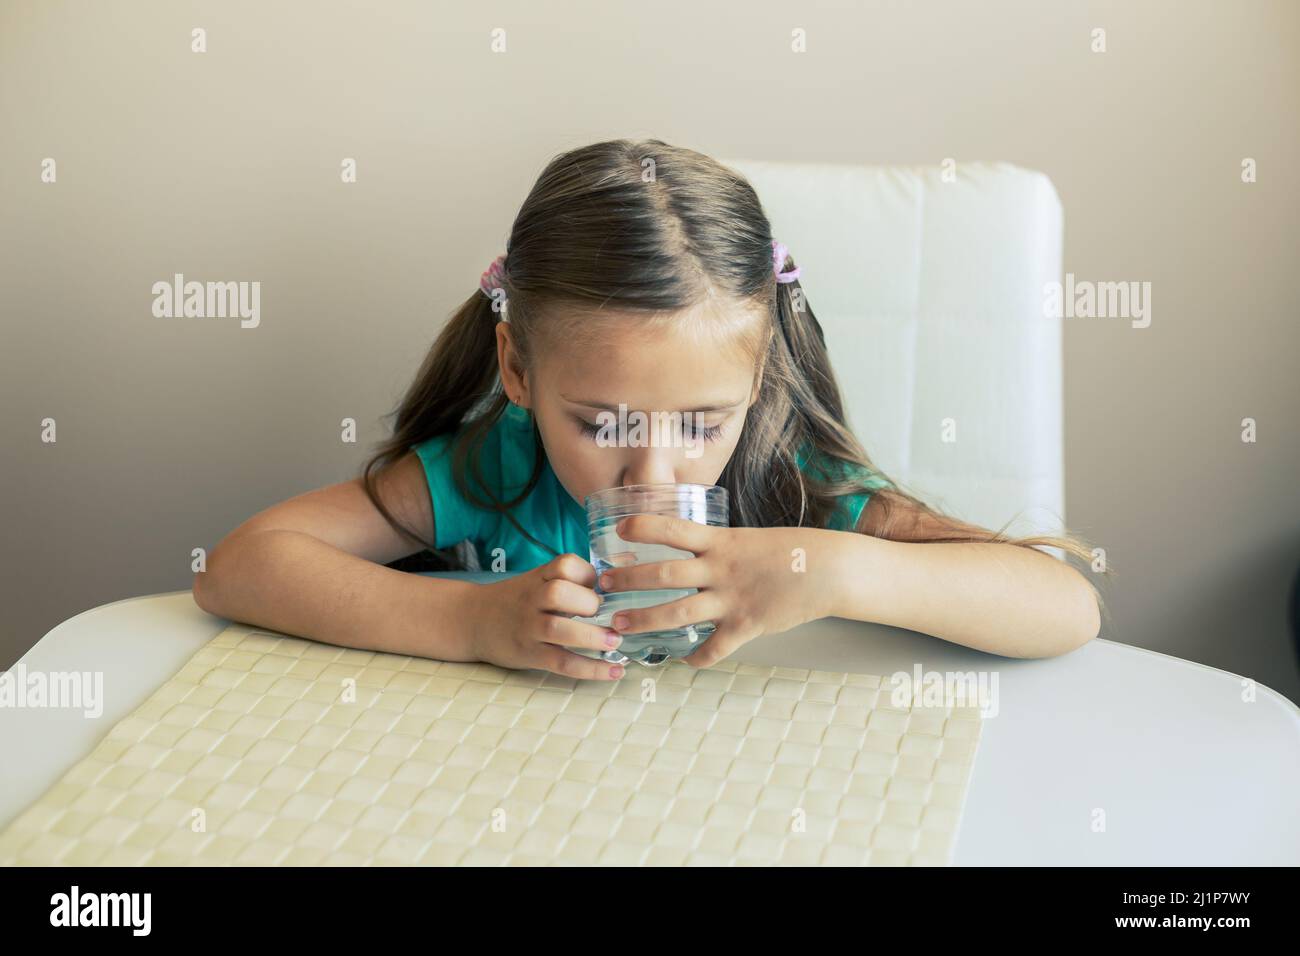 Belle petite fille boit de l'eau propre d'un verre transparent. Banque D'Images